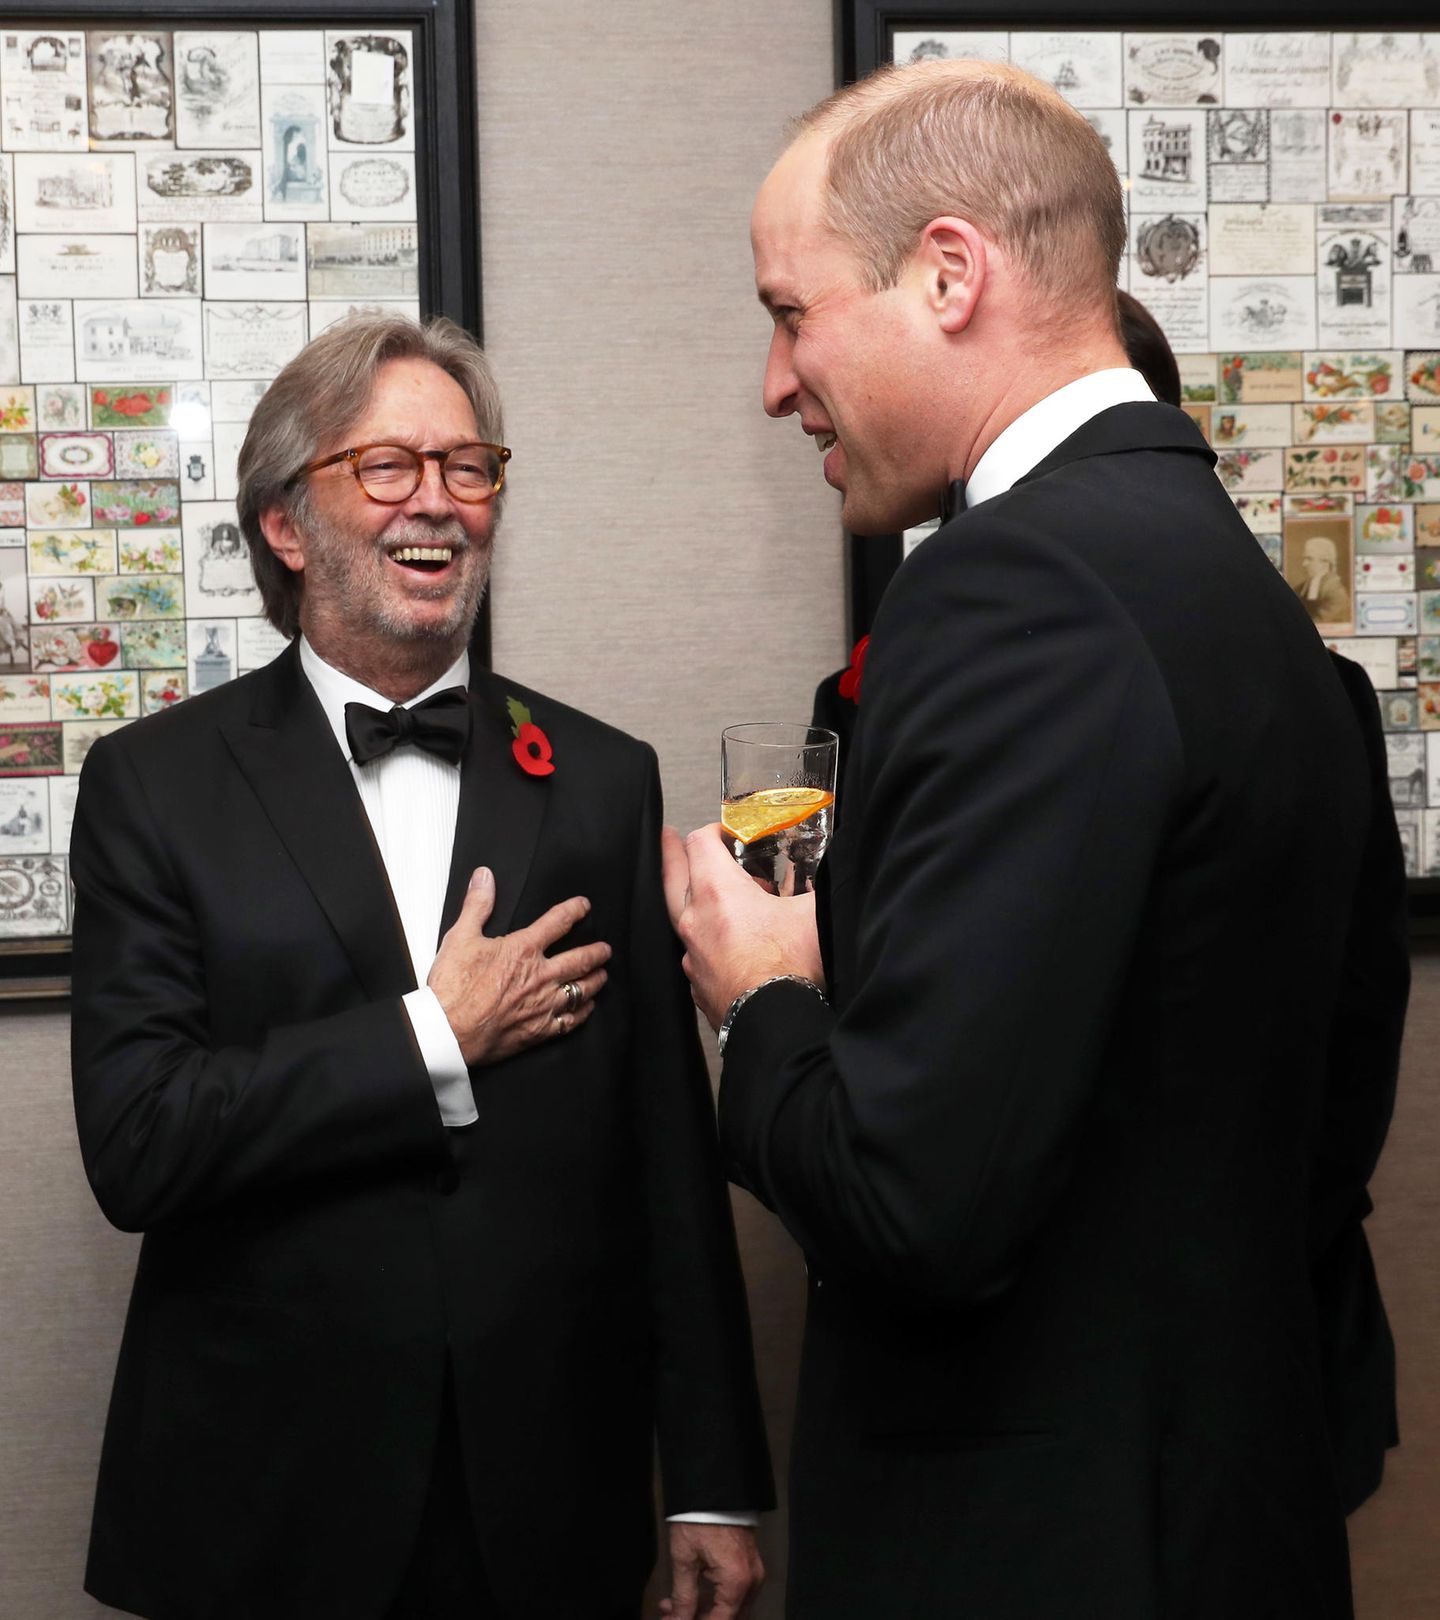 Bei der "London's Air Ambulance Charity Gala" trifft Prinz William auf Eric Clapton und hält mit ihm ein kleines Pläuschchen über die teils schlauchende Kindererziehung. Der Musiker fühlt sich sichtlich geehrt und ist auch ein wenig amüsiert. 